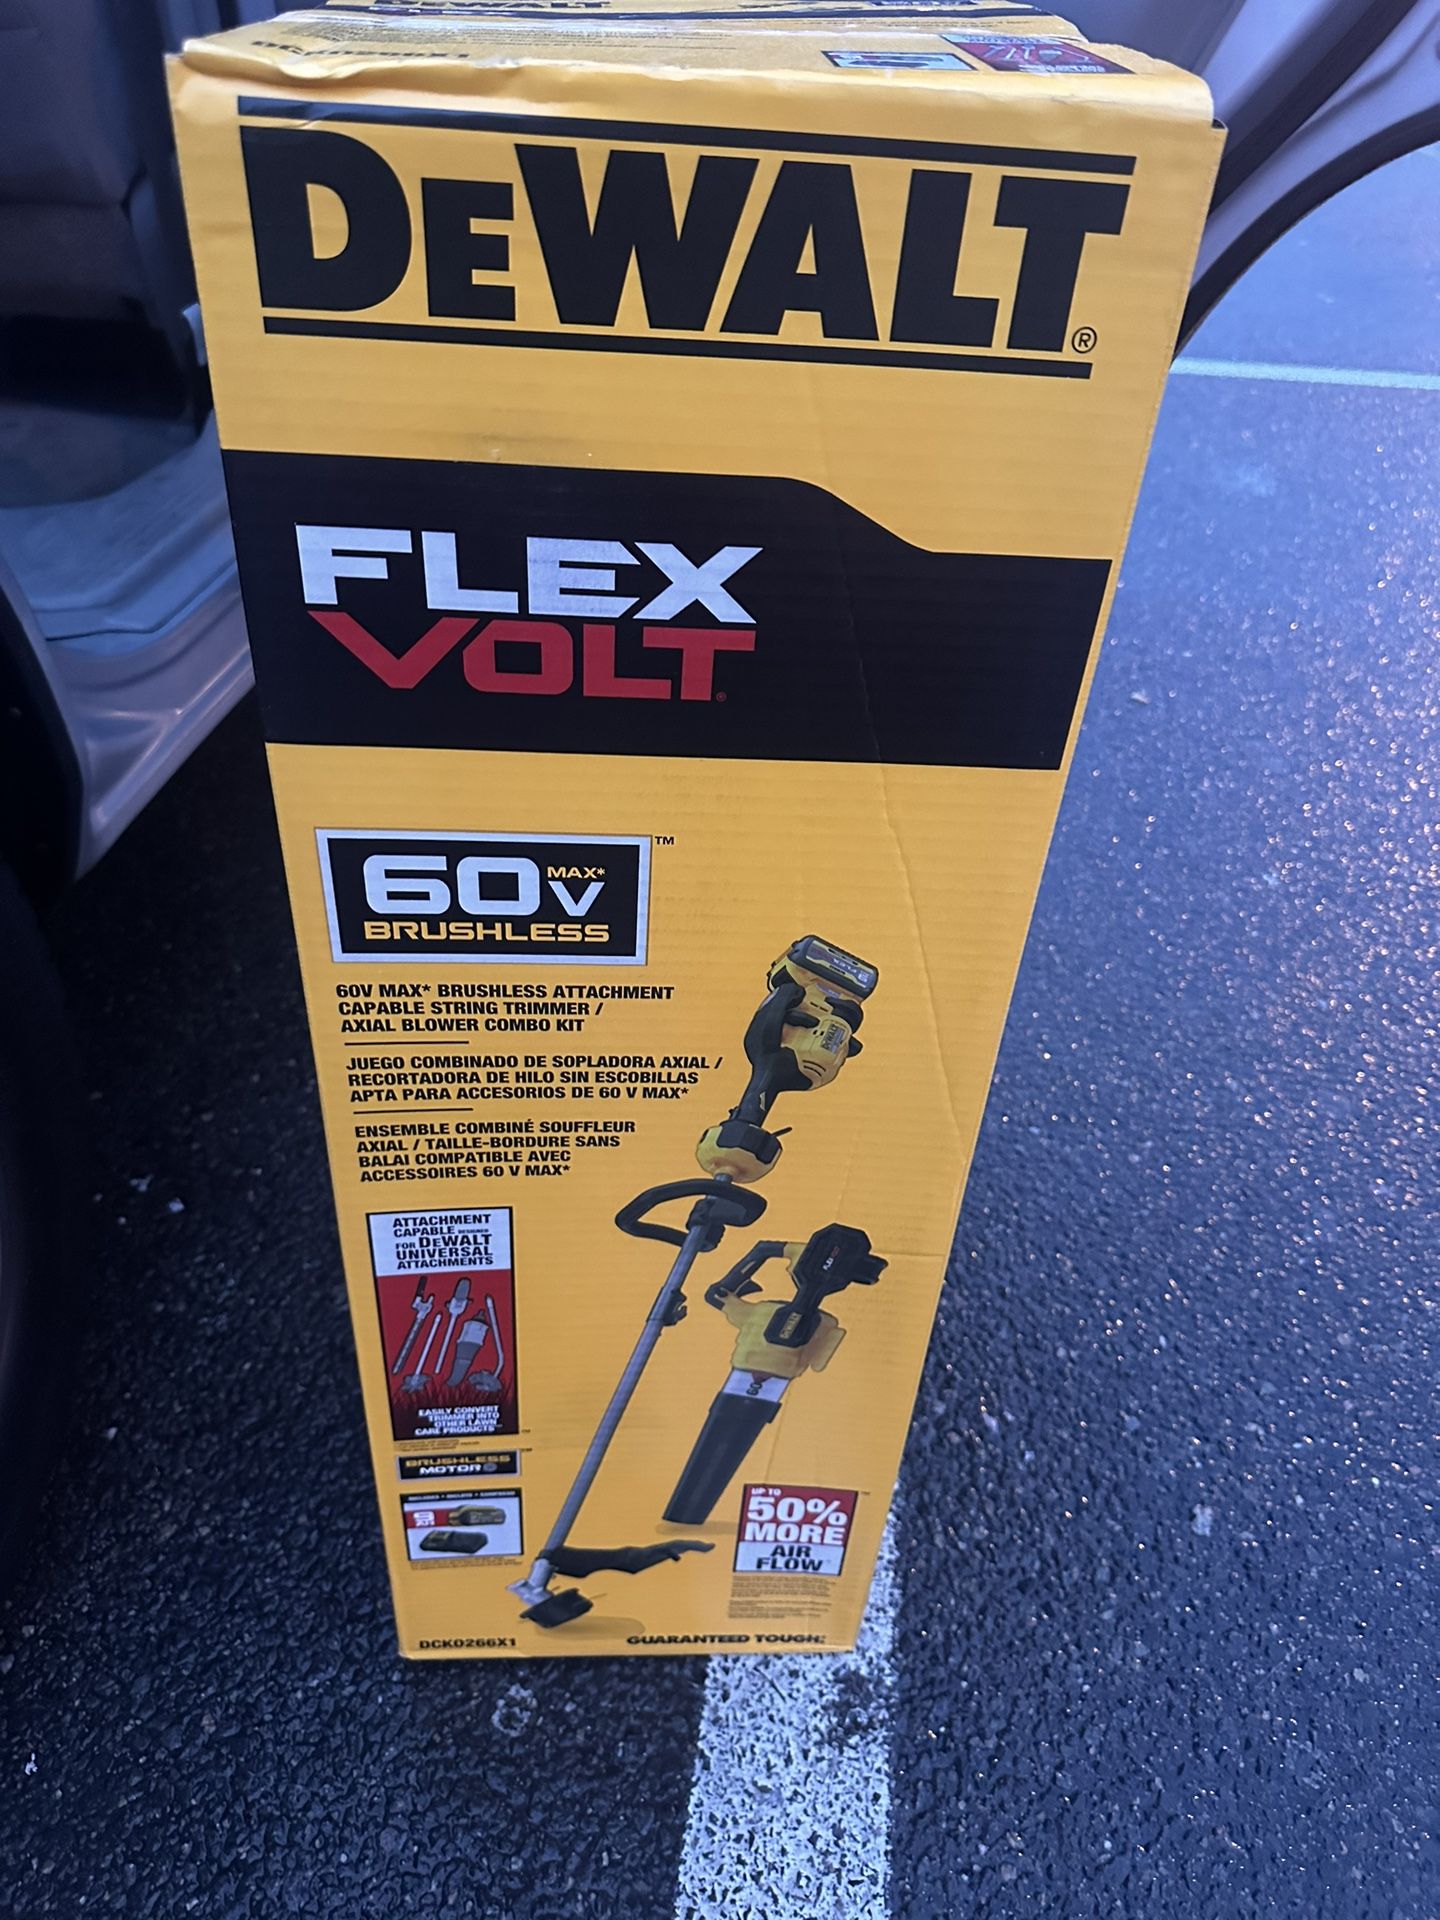 Dewalt 60V MAX Cordless Battery String Trimmer and Leaf Blower Combo Kit